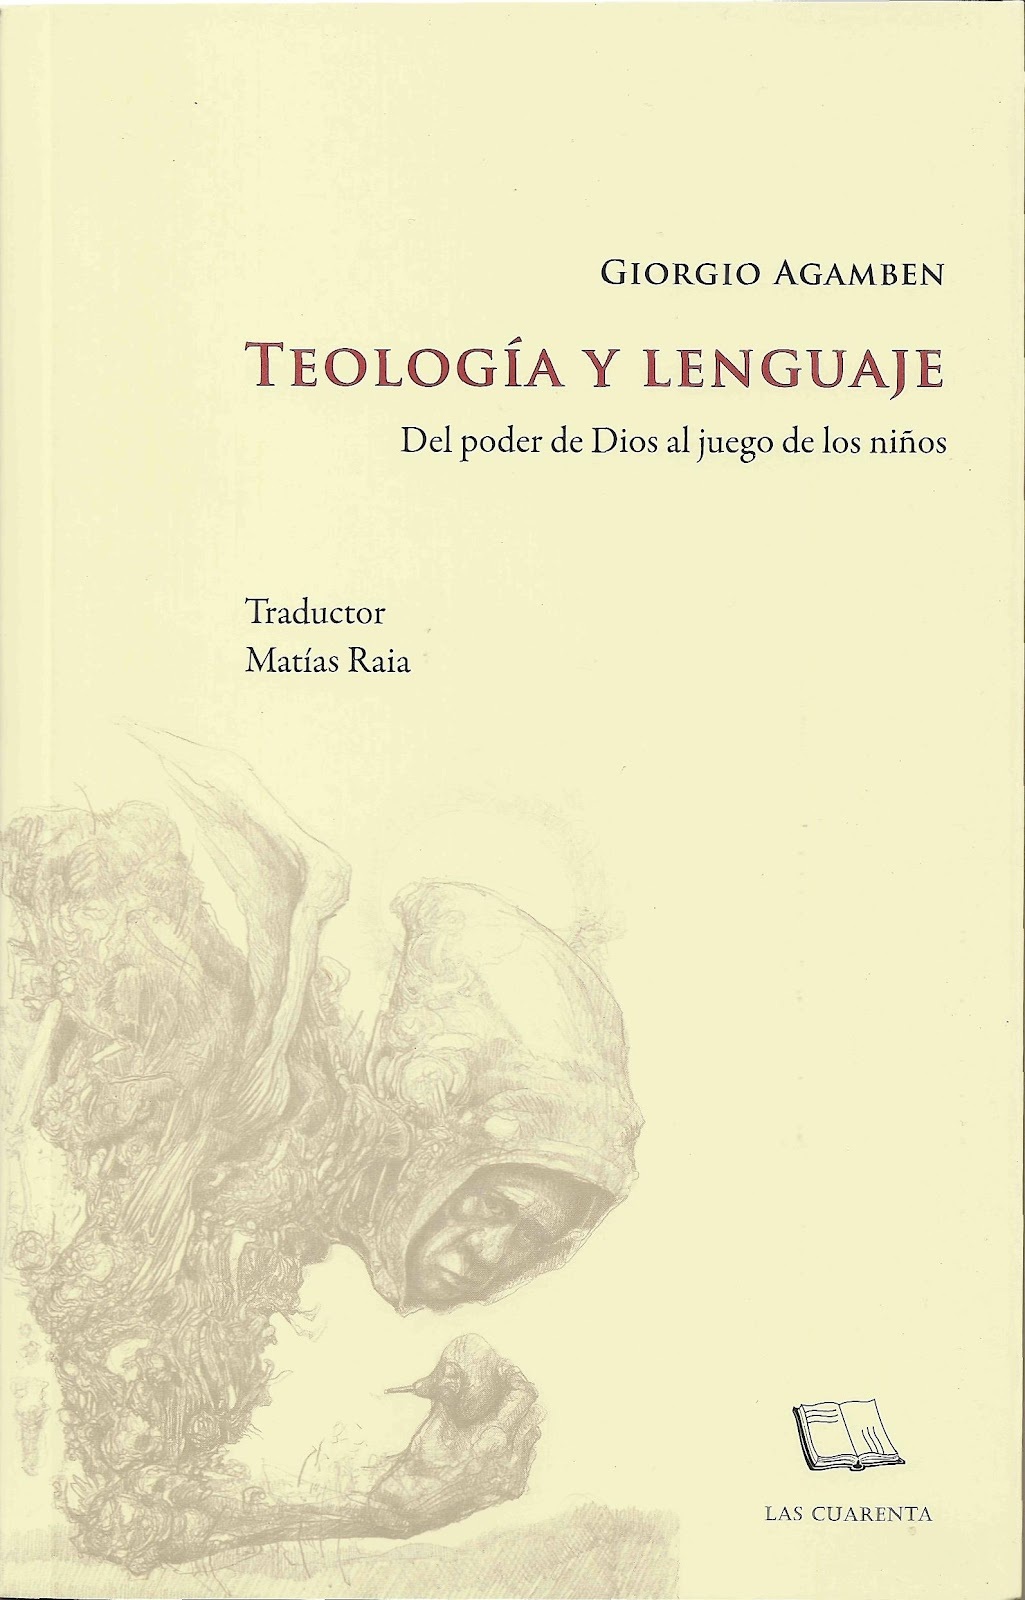 Teología y lenguaje (Paperback, Español language, 2012, Giorgio Agamben)